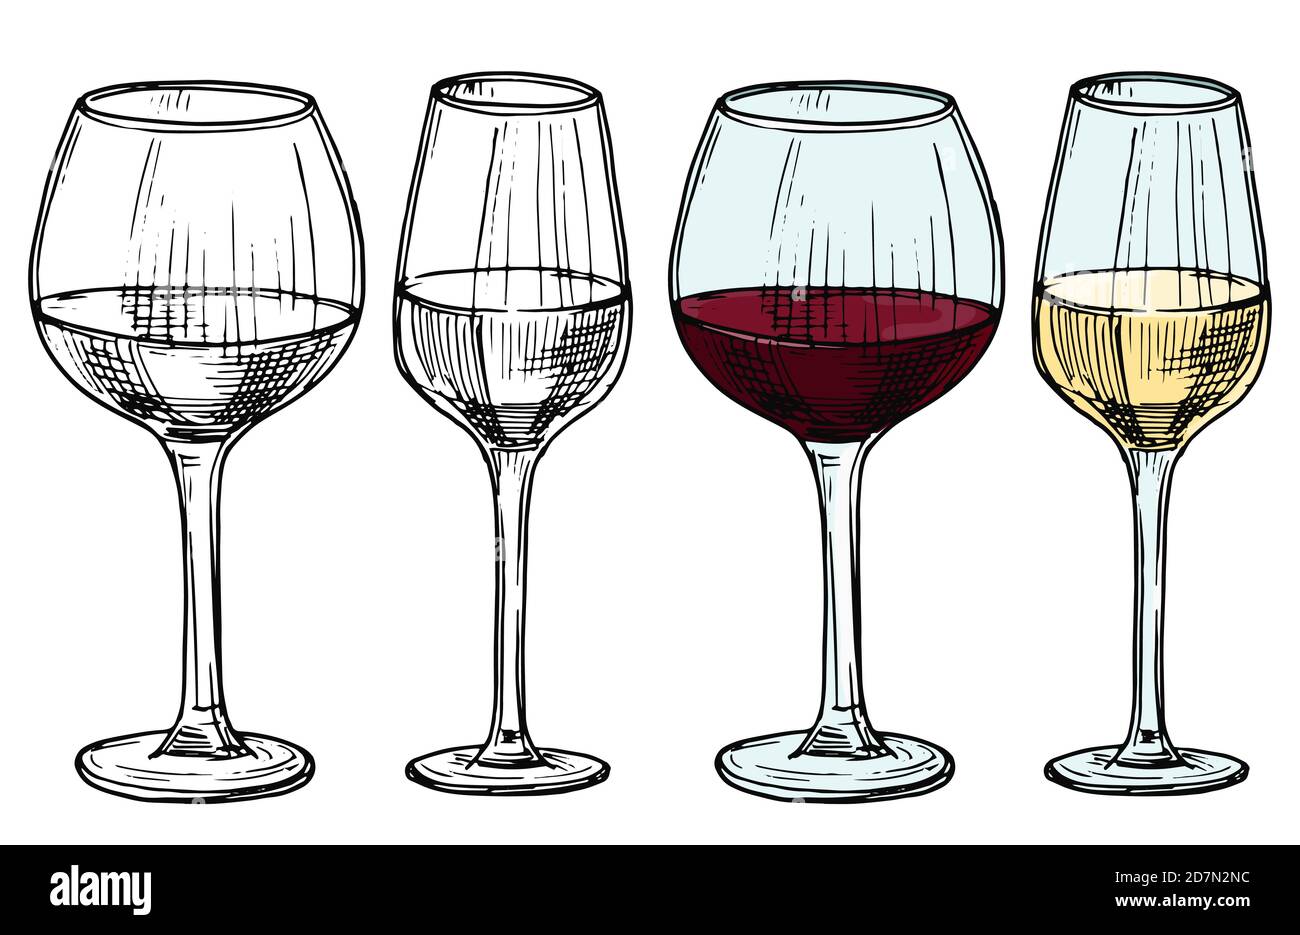 Bicchieri disegnati a mano con illustrazione vettoriale del vino rosso e bianco. Vino alcolico bianco e rosso, bevanda di schizzo in verricello Illustrazione Vettoriale